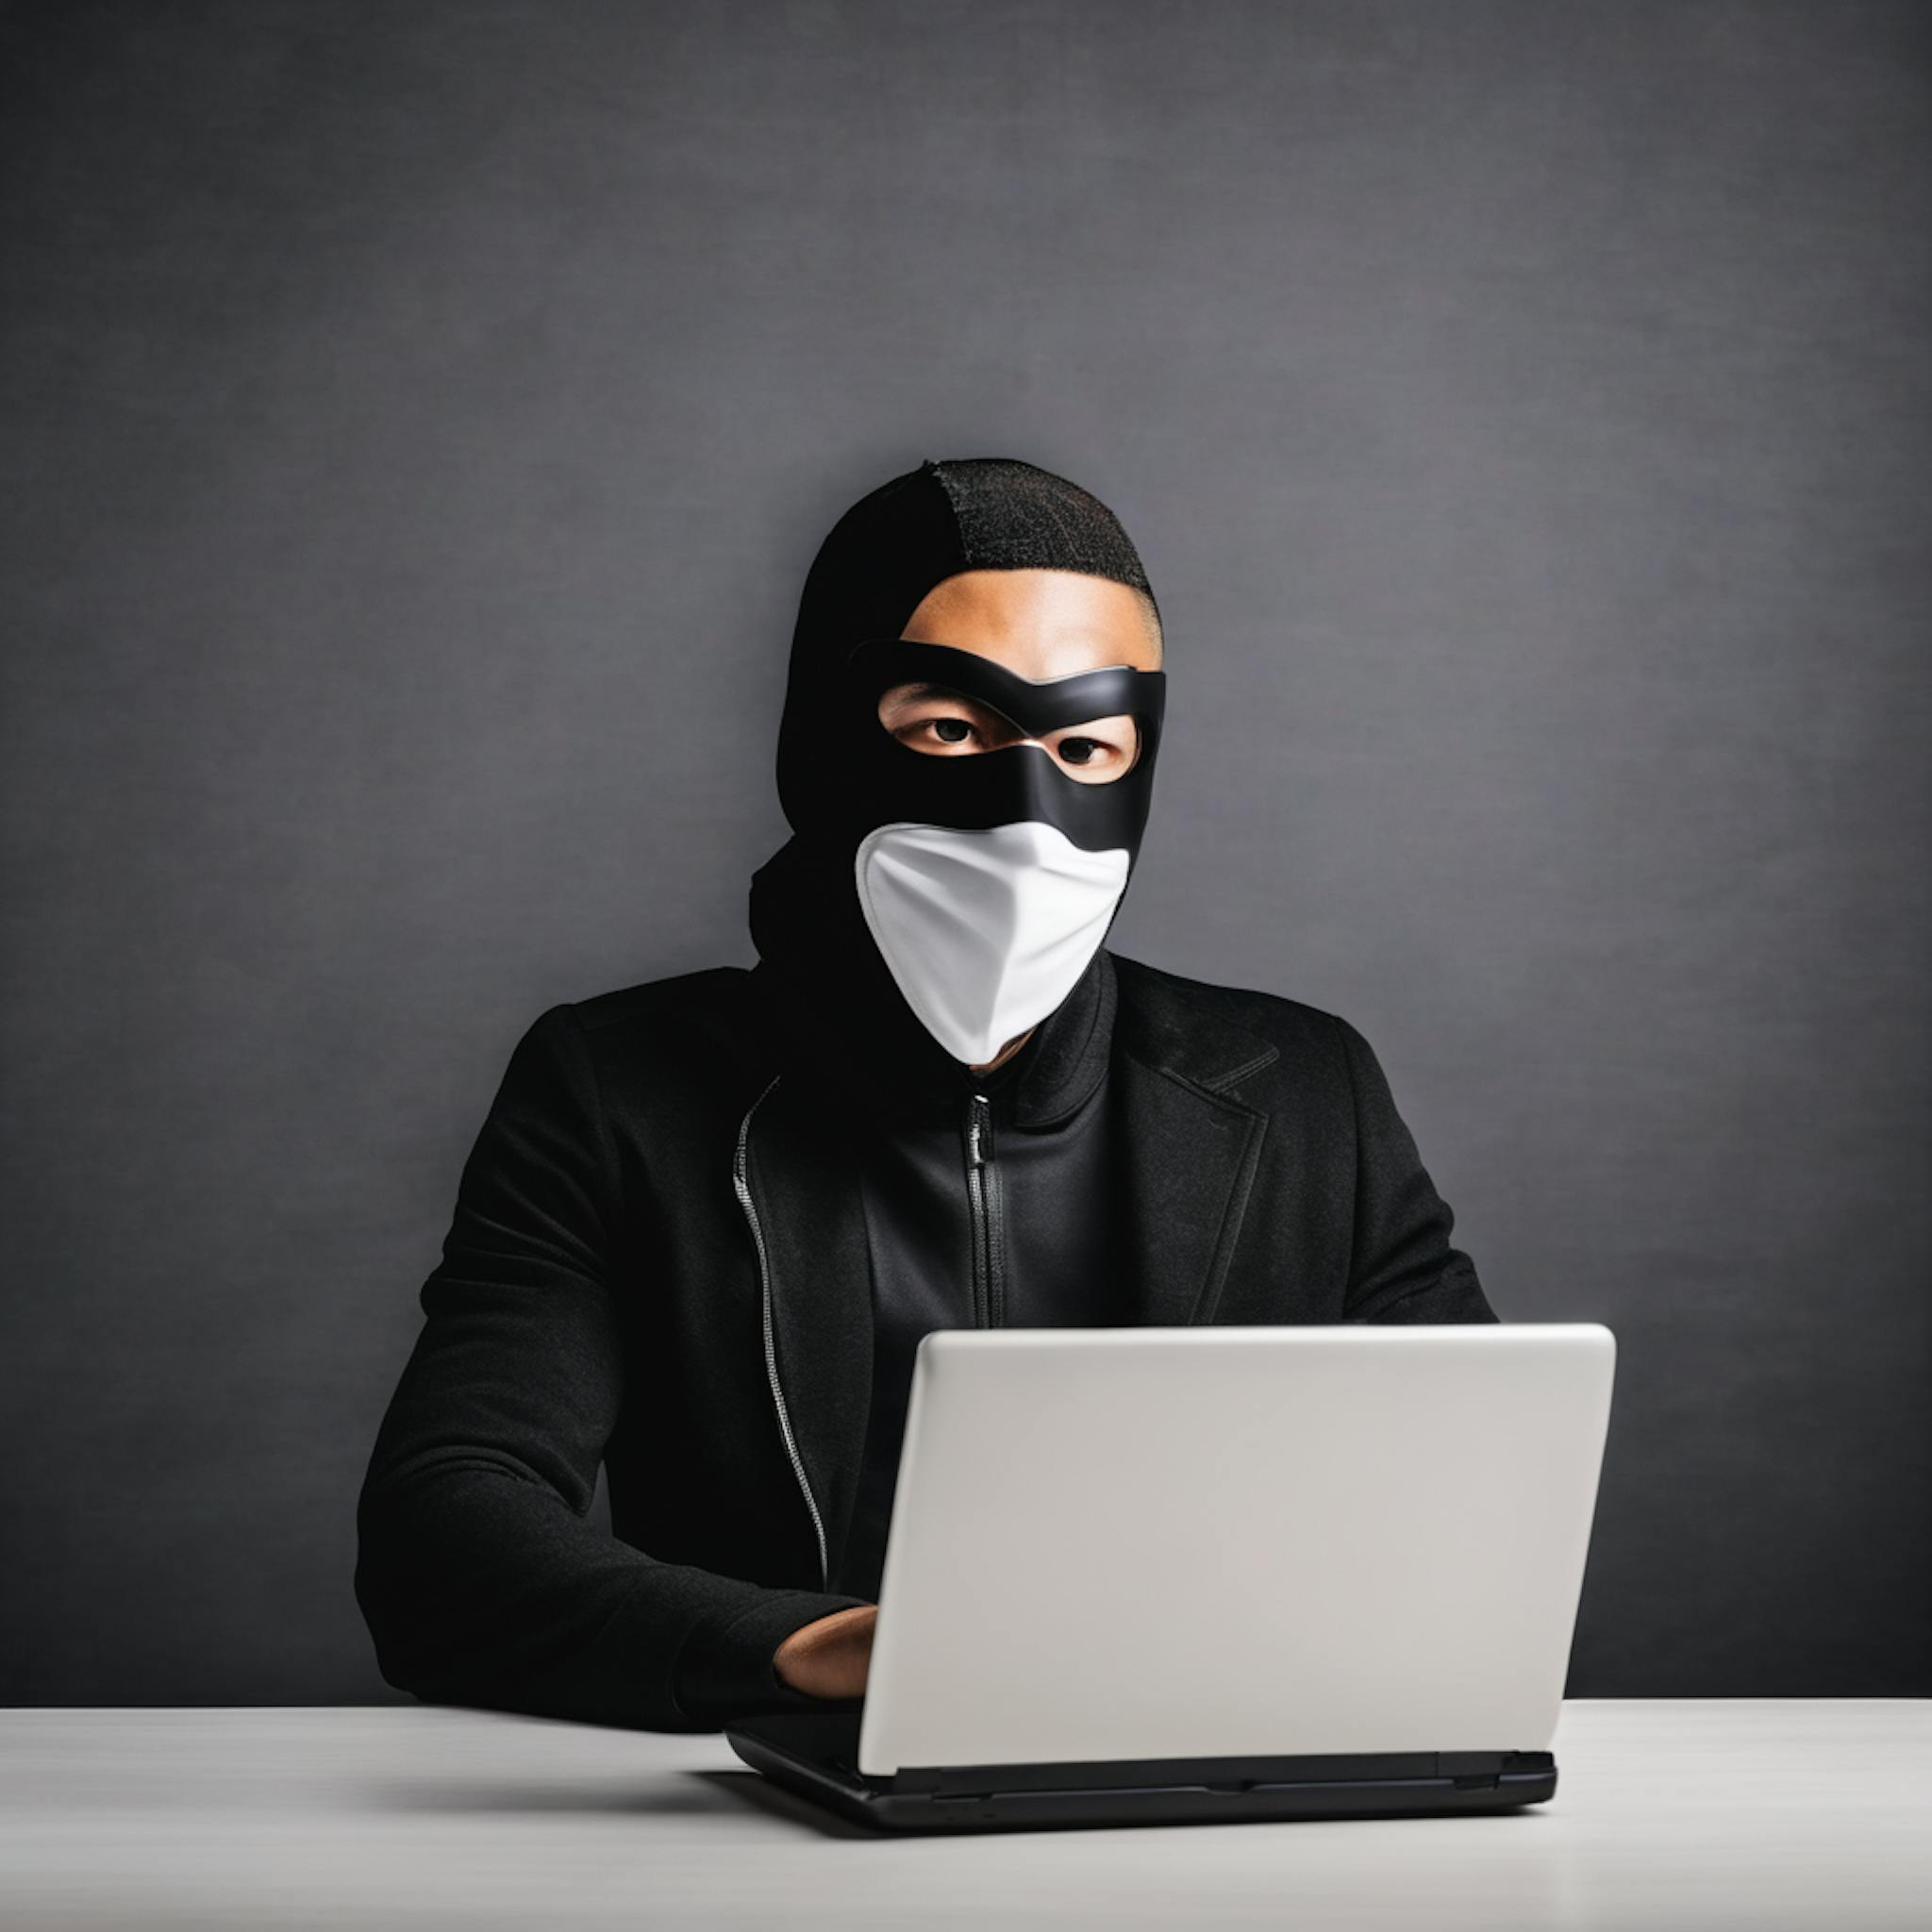 featured image - El creciente panorama de amenazas cibernéticas: información sobre las actividades cibernéticas criminales y patrocinadas por el Estado